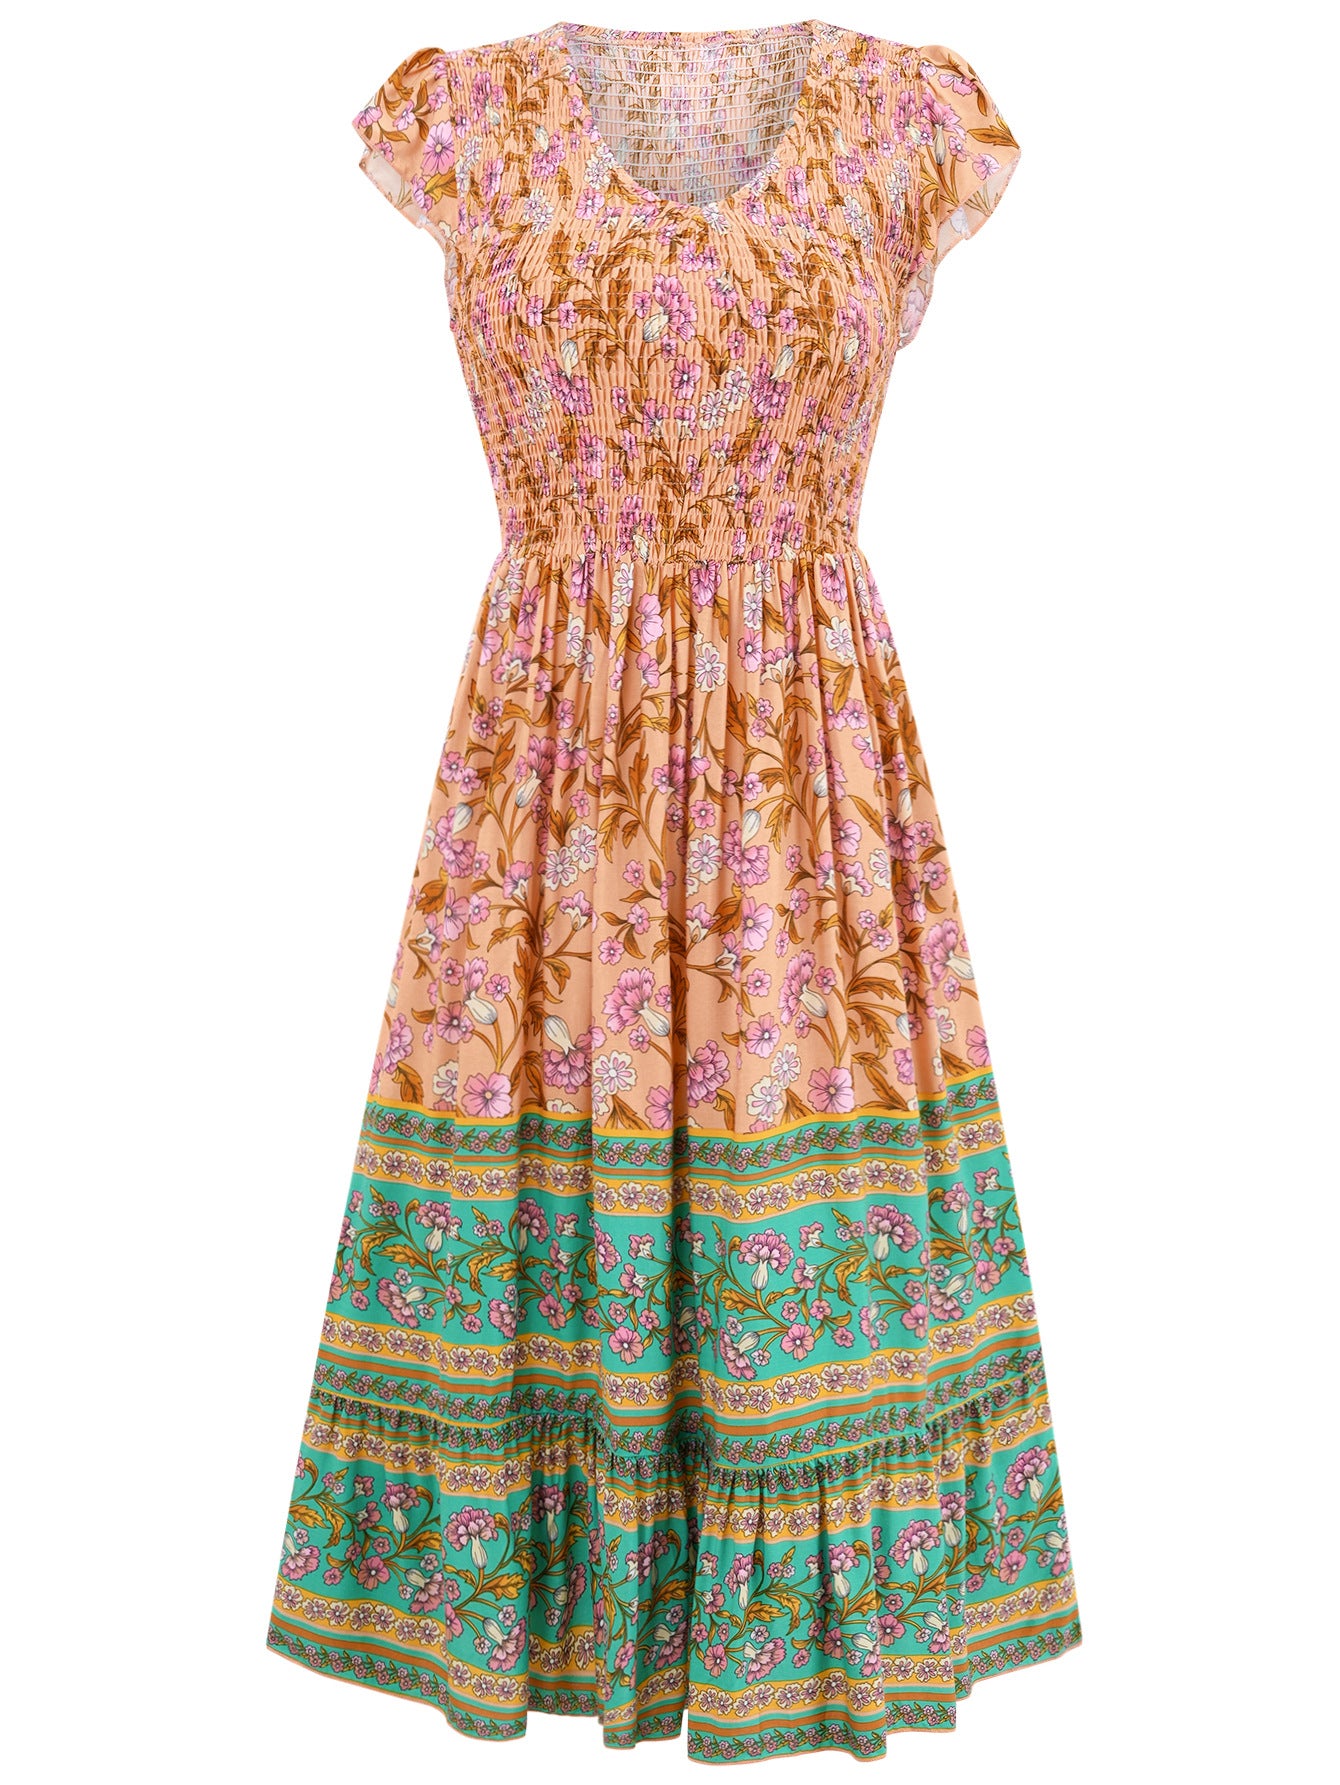 Neue Blumen Druck V-Ausschnitt Kleid Sommer Casual Rüsche Ärmellose Kleider Bohemian Holiday Beach Kleid für Damenkleidung - nargis